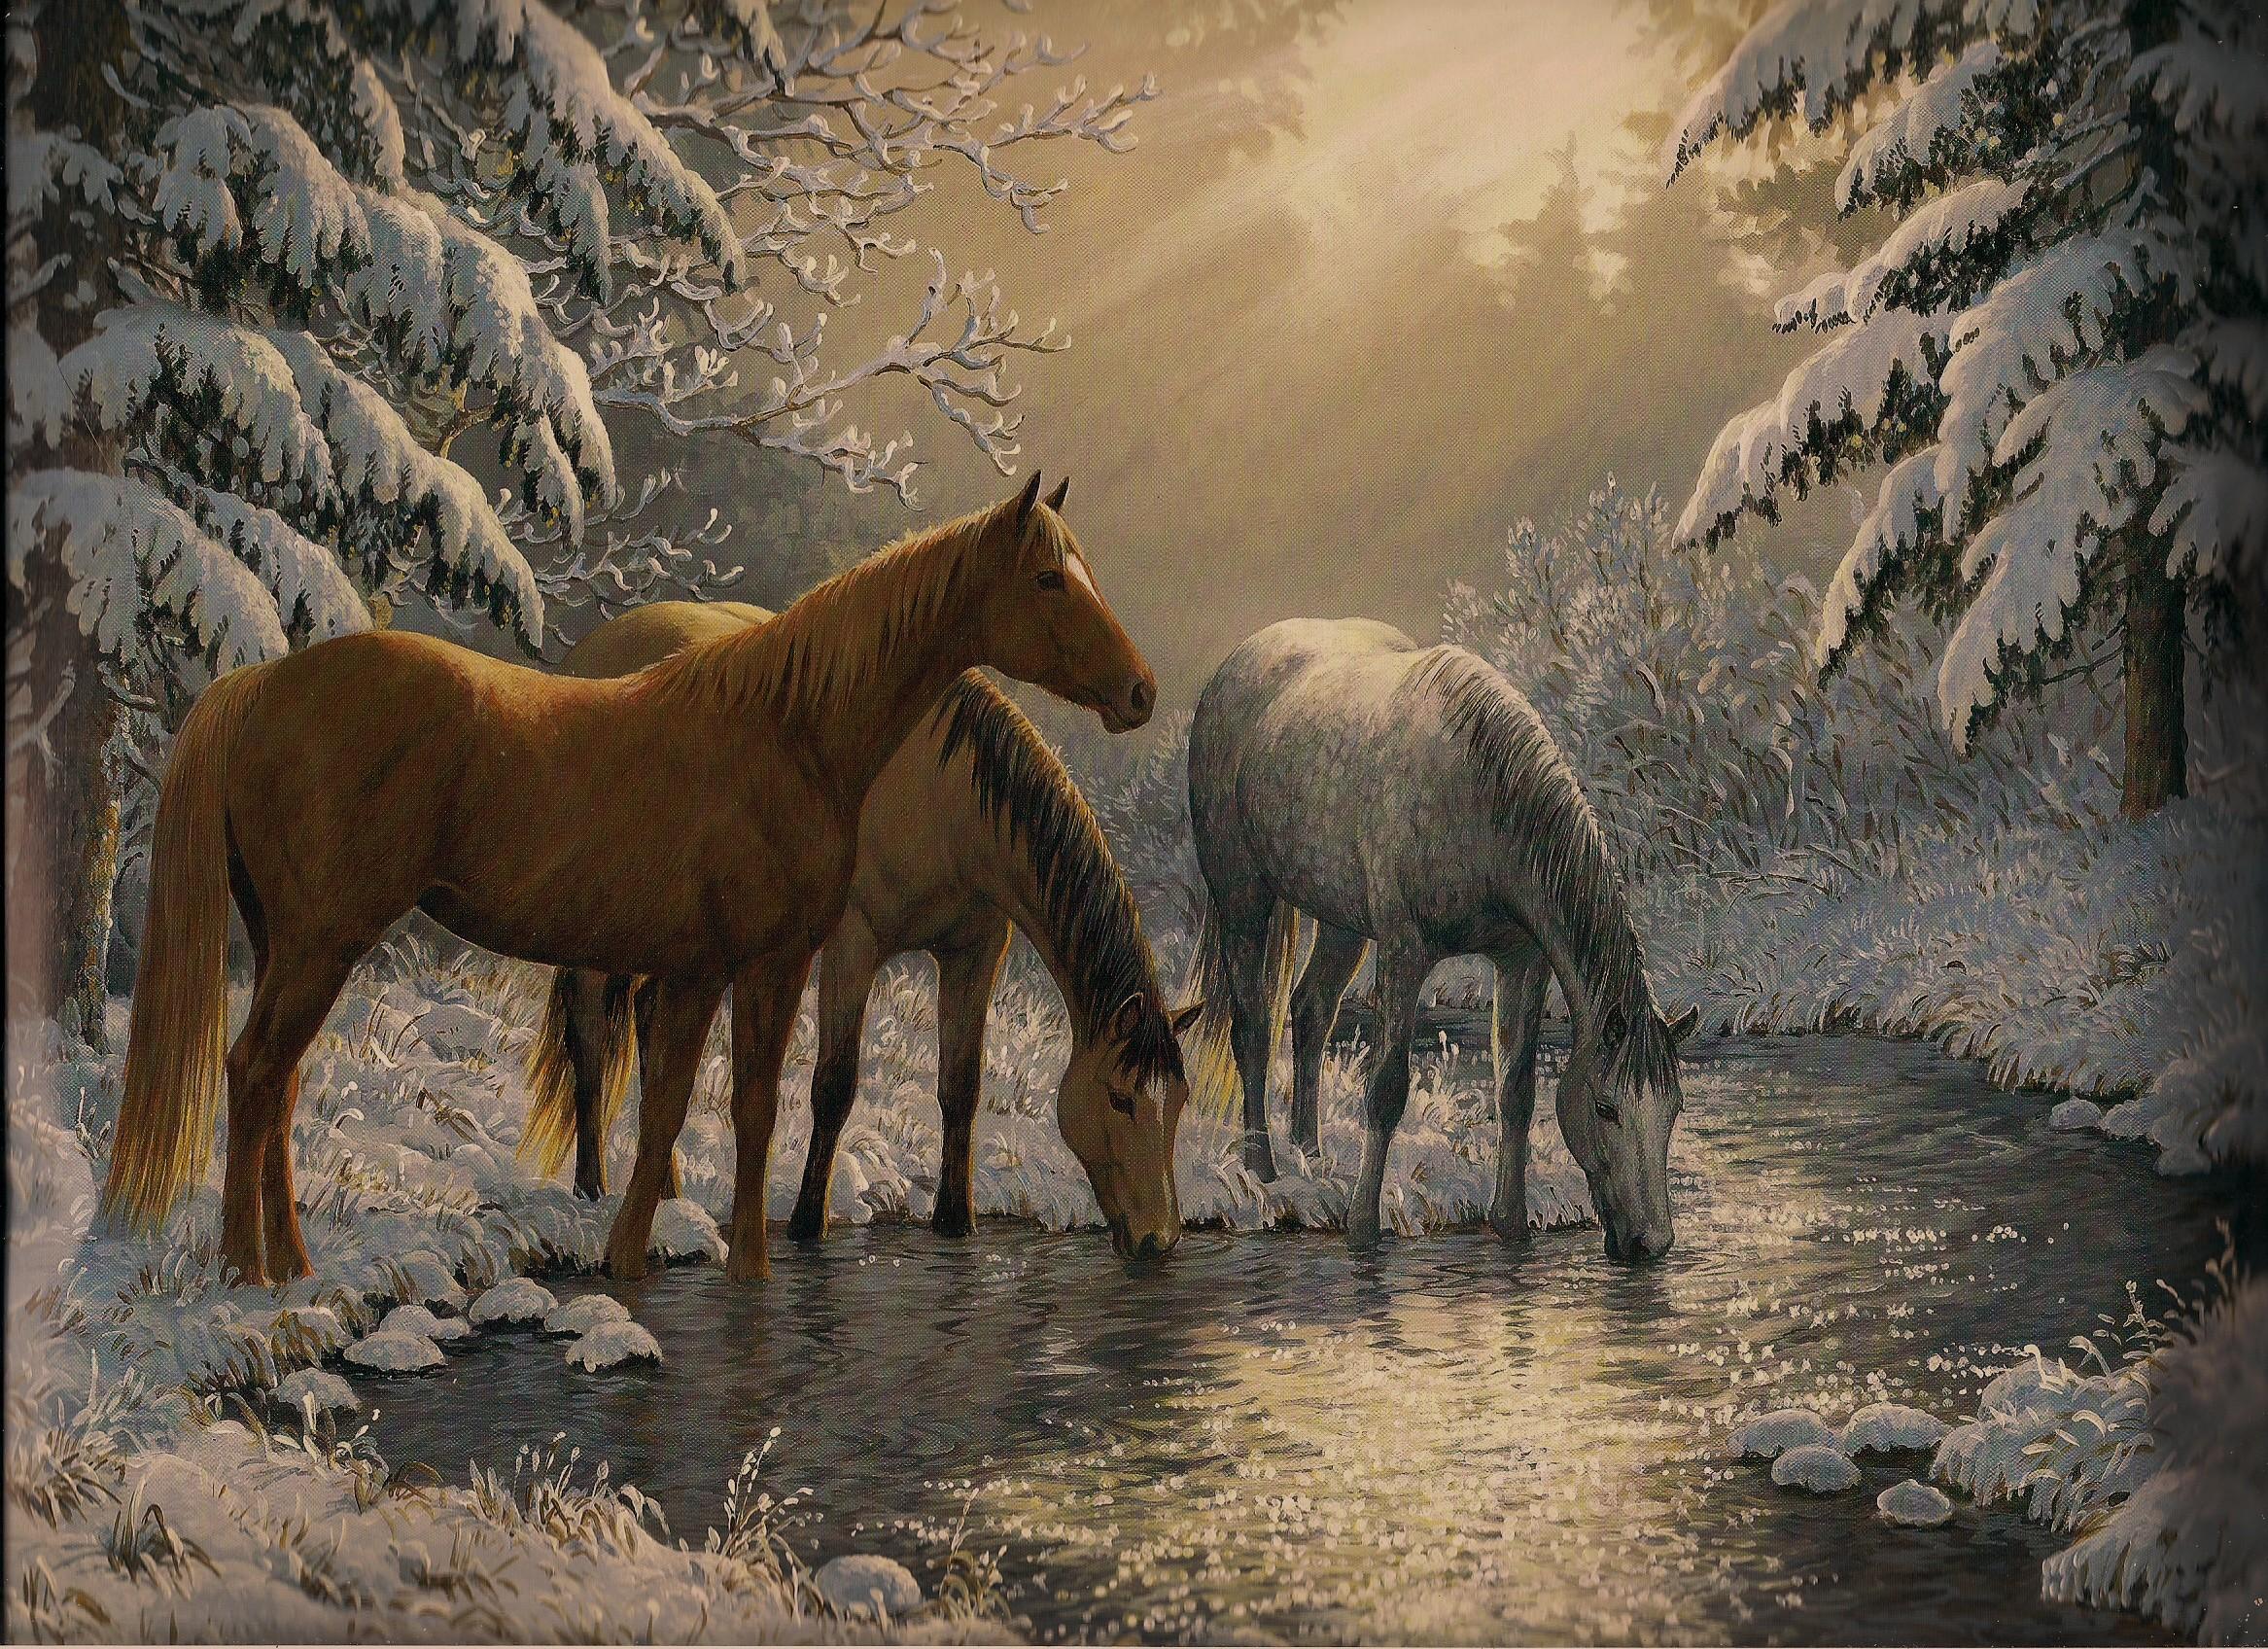 [49+] Winter Animal Scenes Wallpaper | Wallpapersafari.com